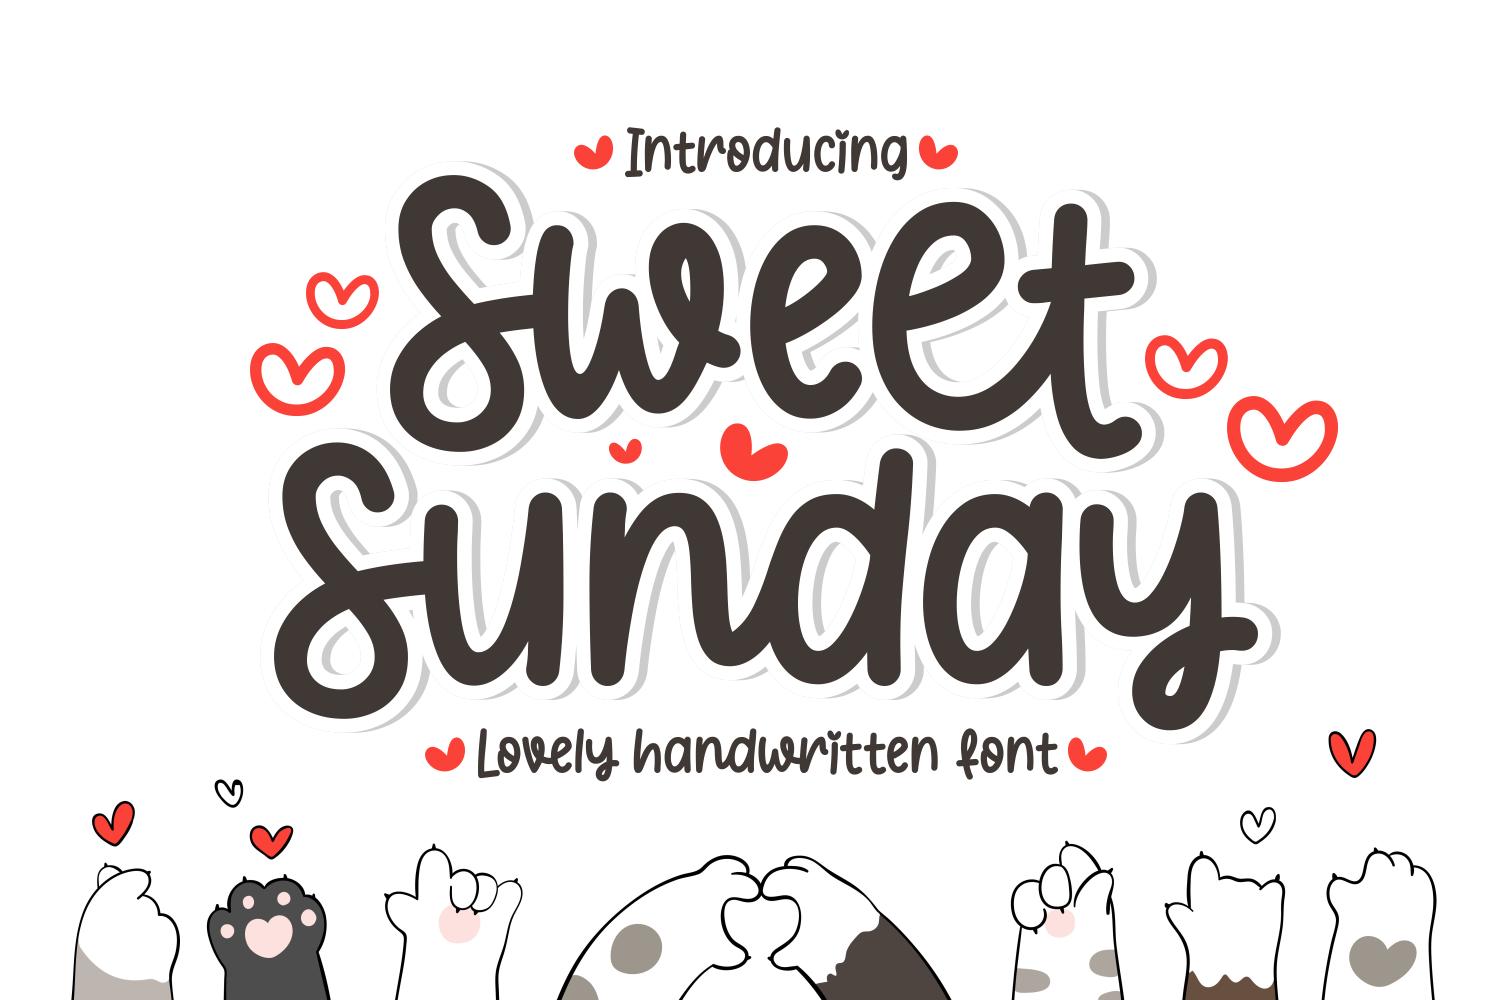 Sweet Sunday Font